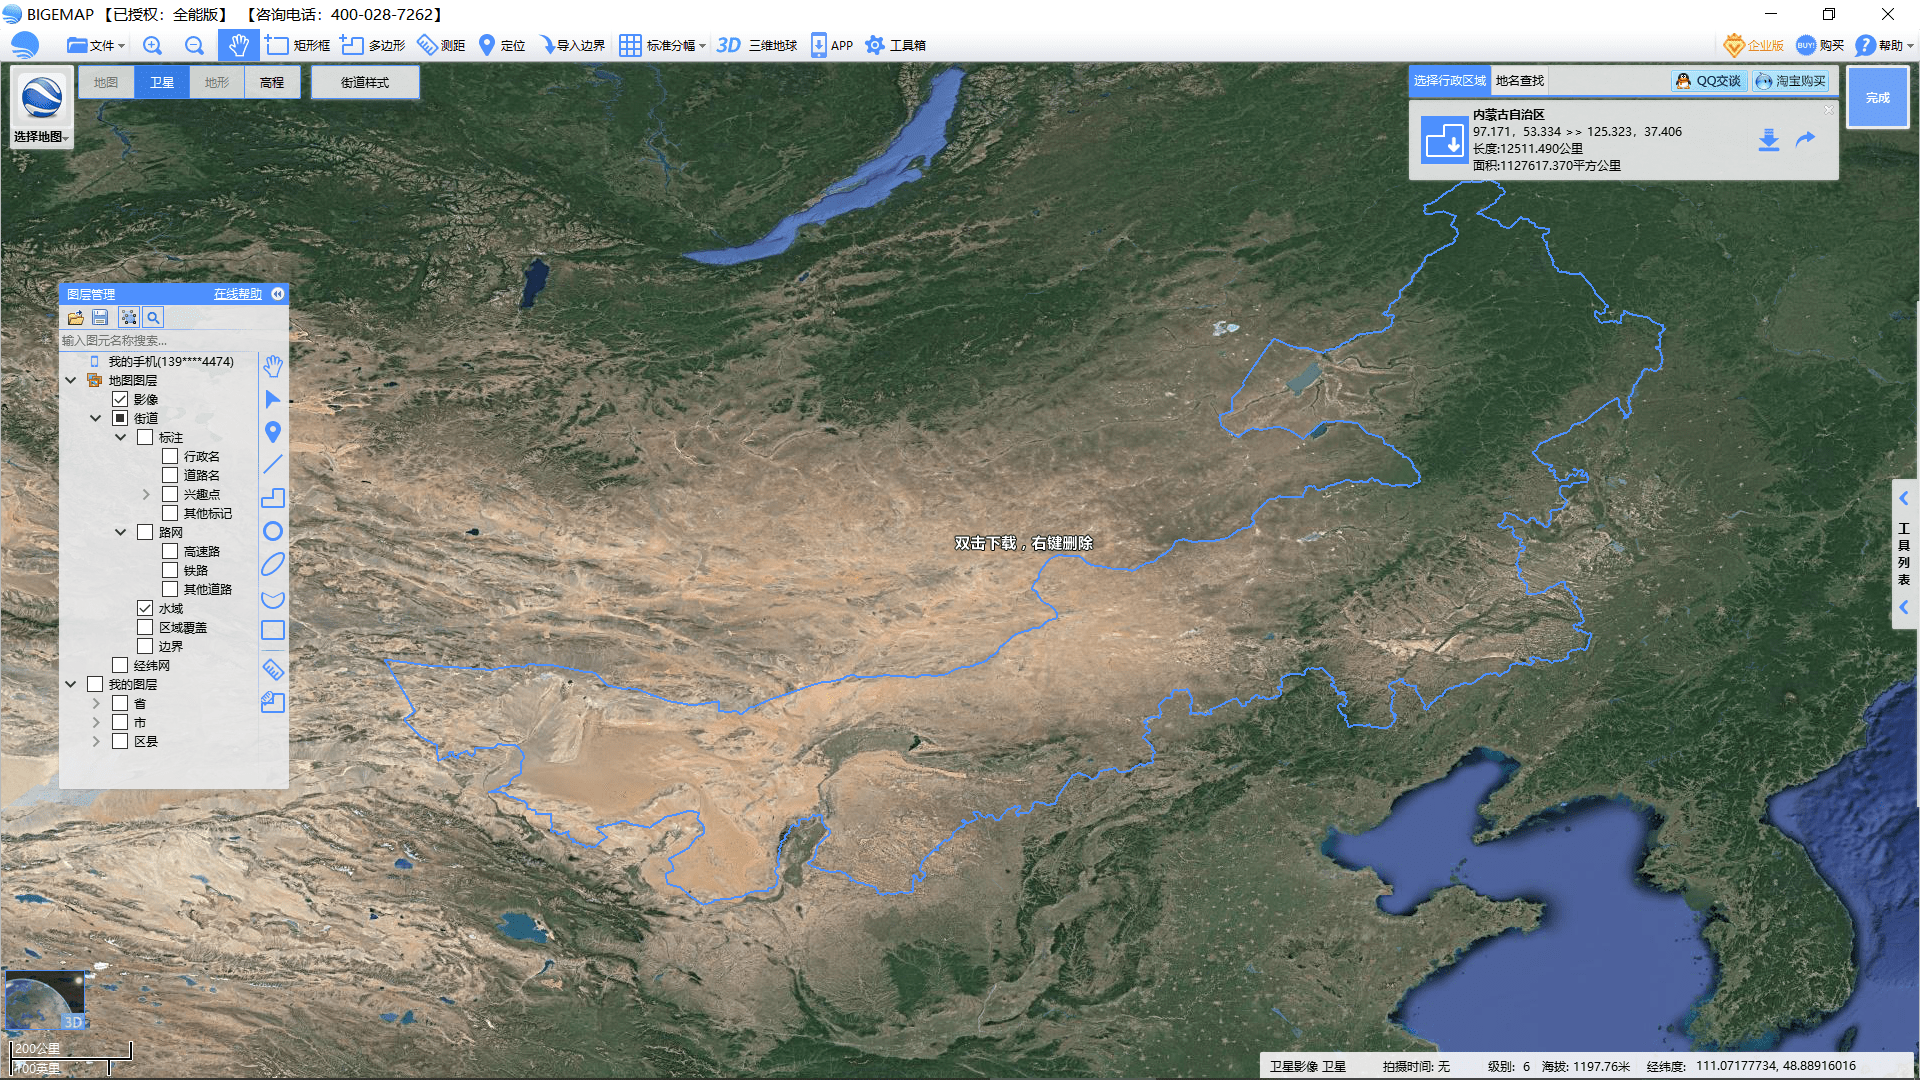 卫星地图来源:bigemap大地图 三,中国总面积最大的城市是三沙市